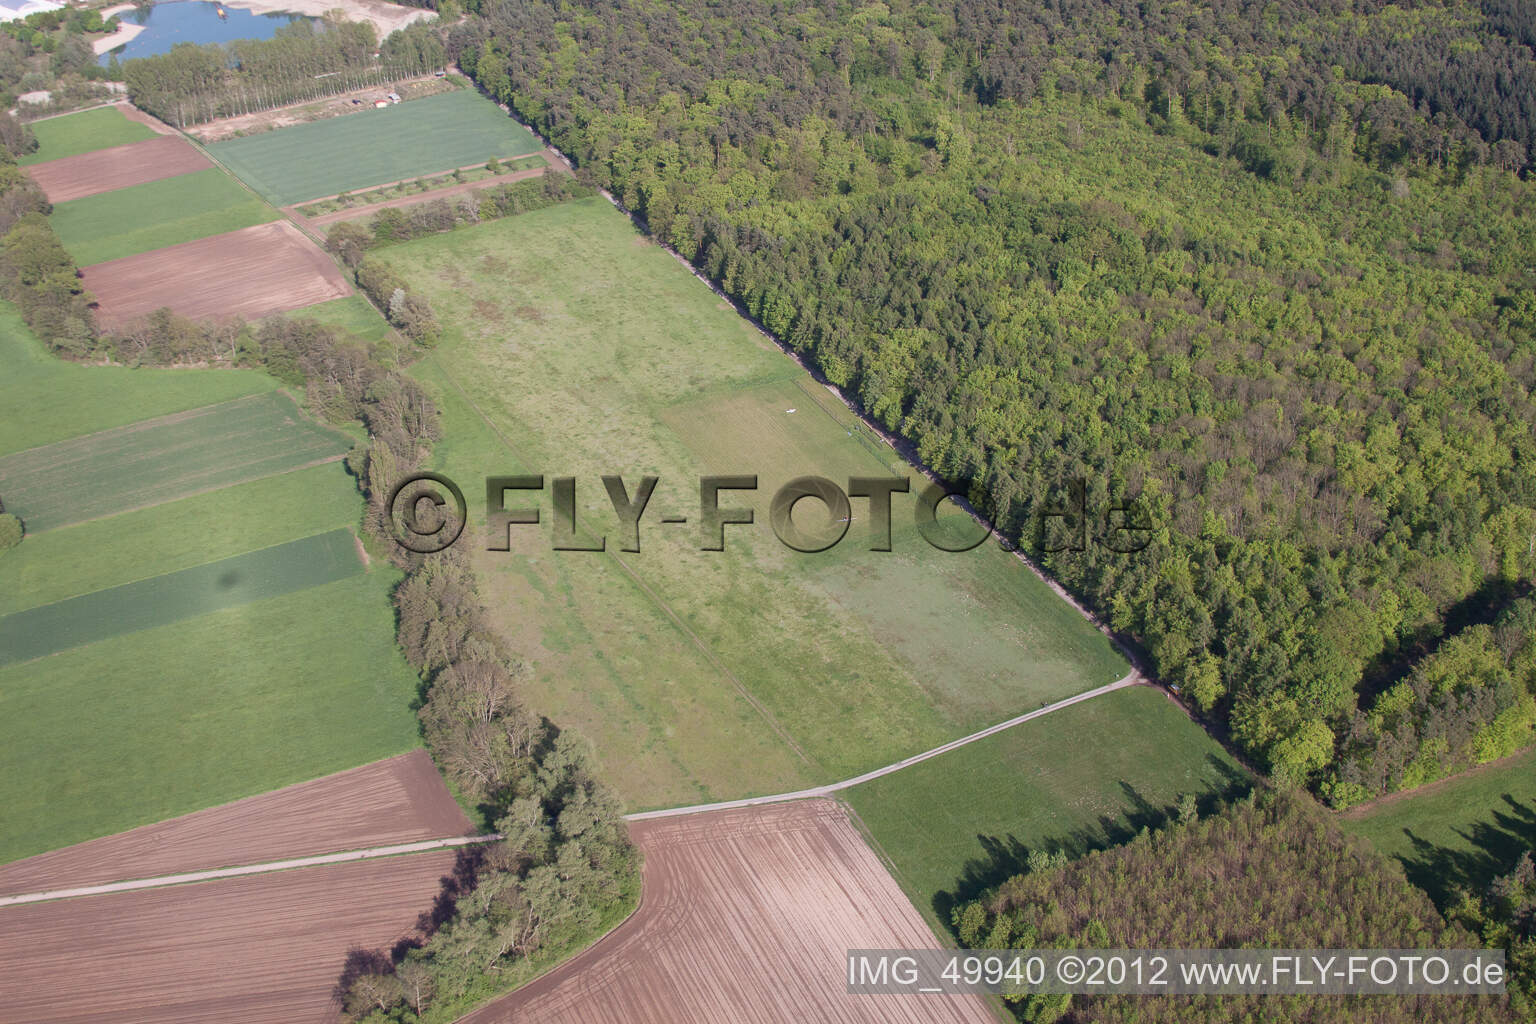 Photographie aérienne de Aérodrome modèle MSC Rülzheim vu du nord-ouest à Rülzheim dans le département Rhénanie-Palatinat, Allemagne